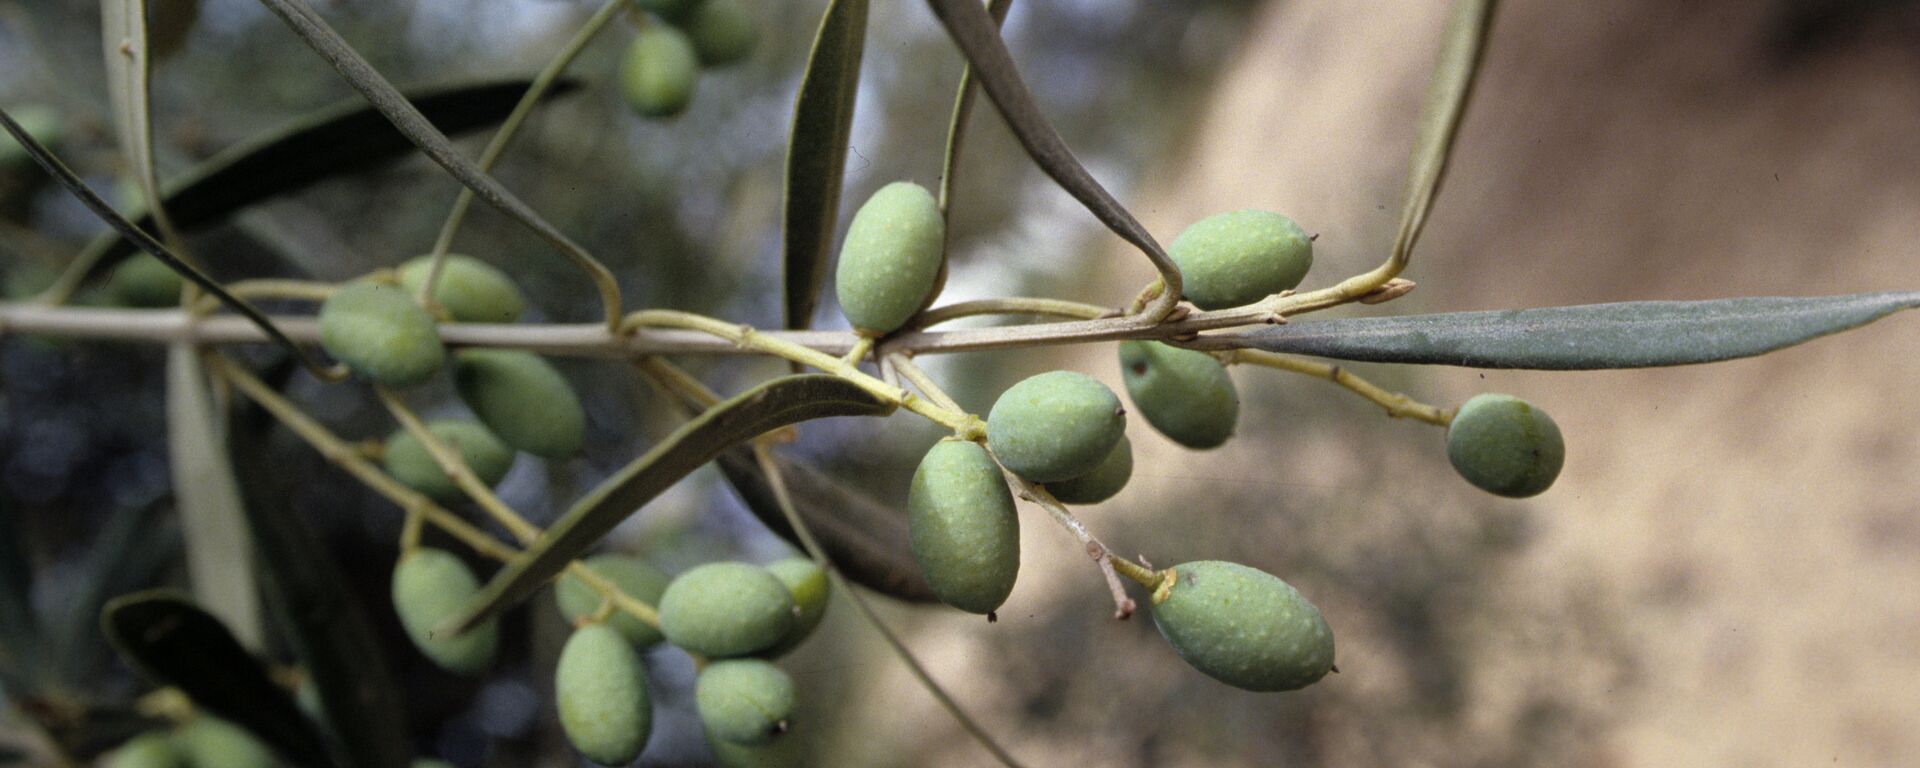 Оливки - плоды оливкового дерева - Sputnik Узбекистан, 1920, 03.08.2021